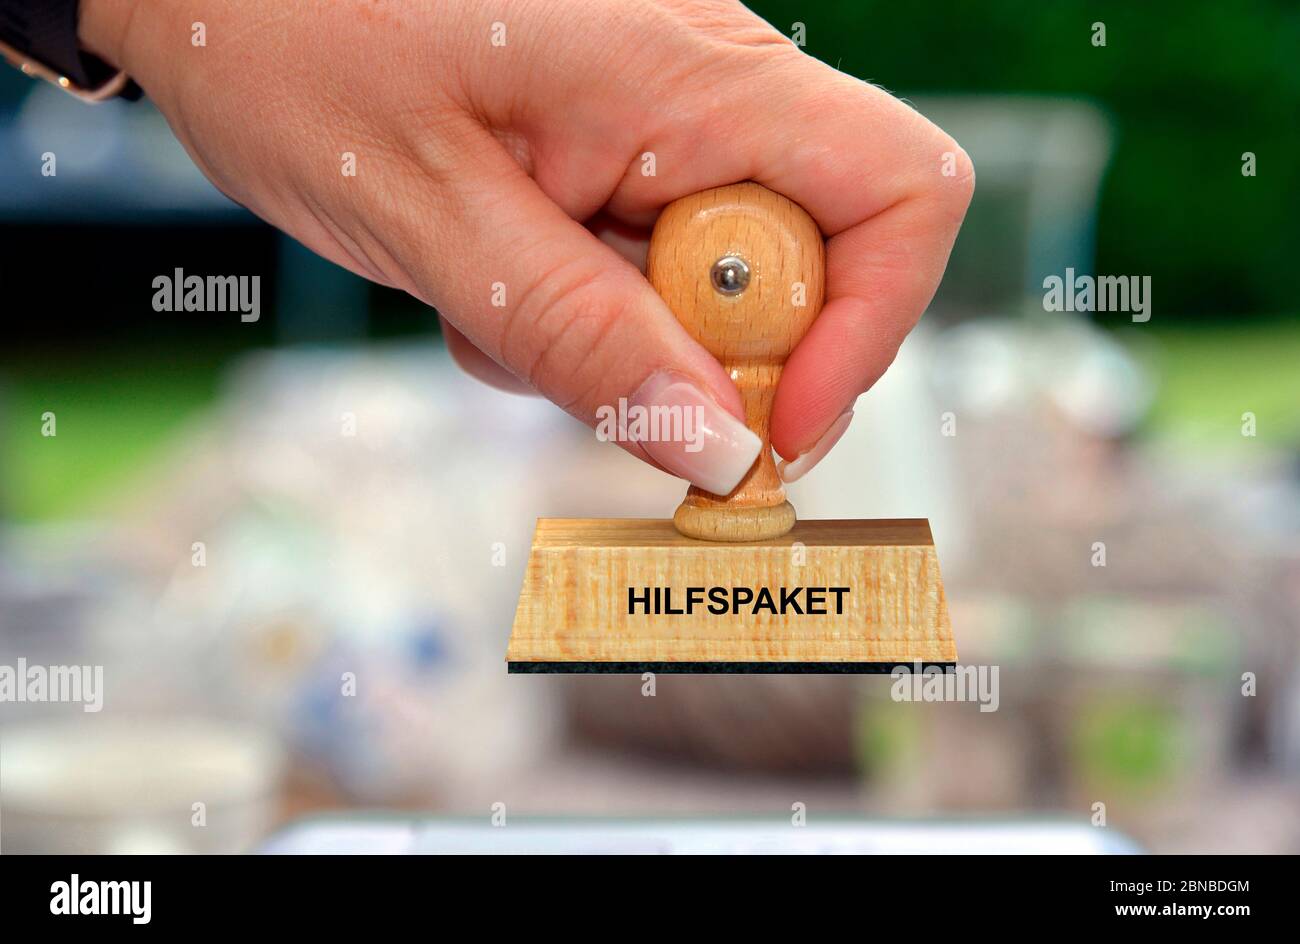 Sello en la mano de una mujer que le ha grabado Hilfspaket, paquete de ayuda Foto de stock